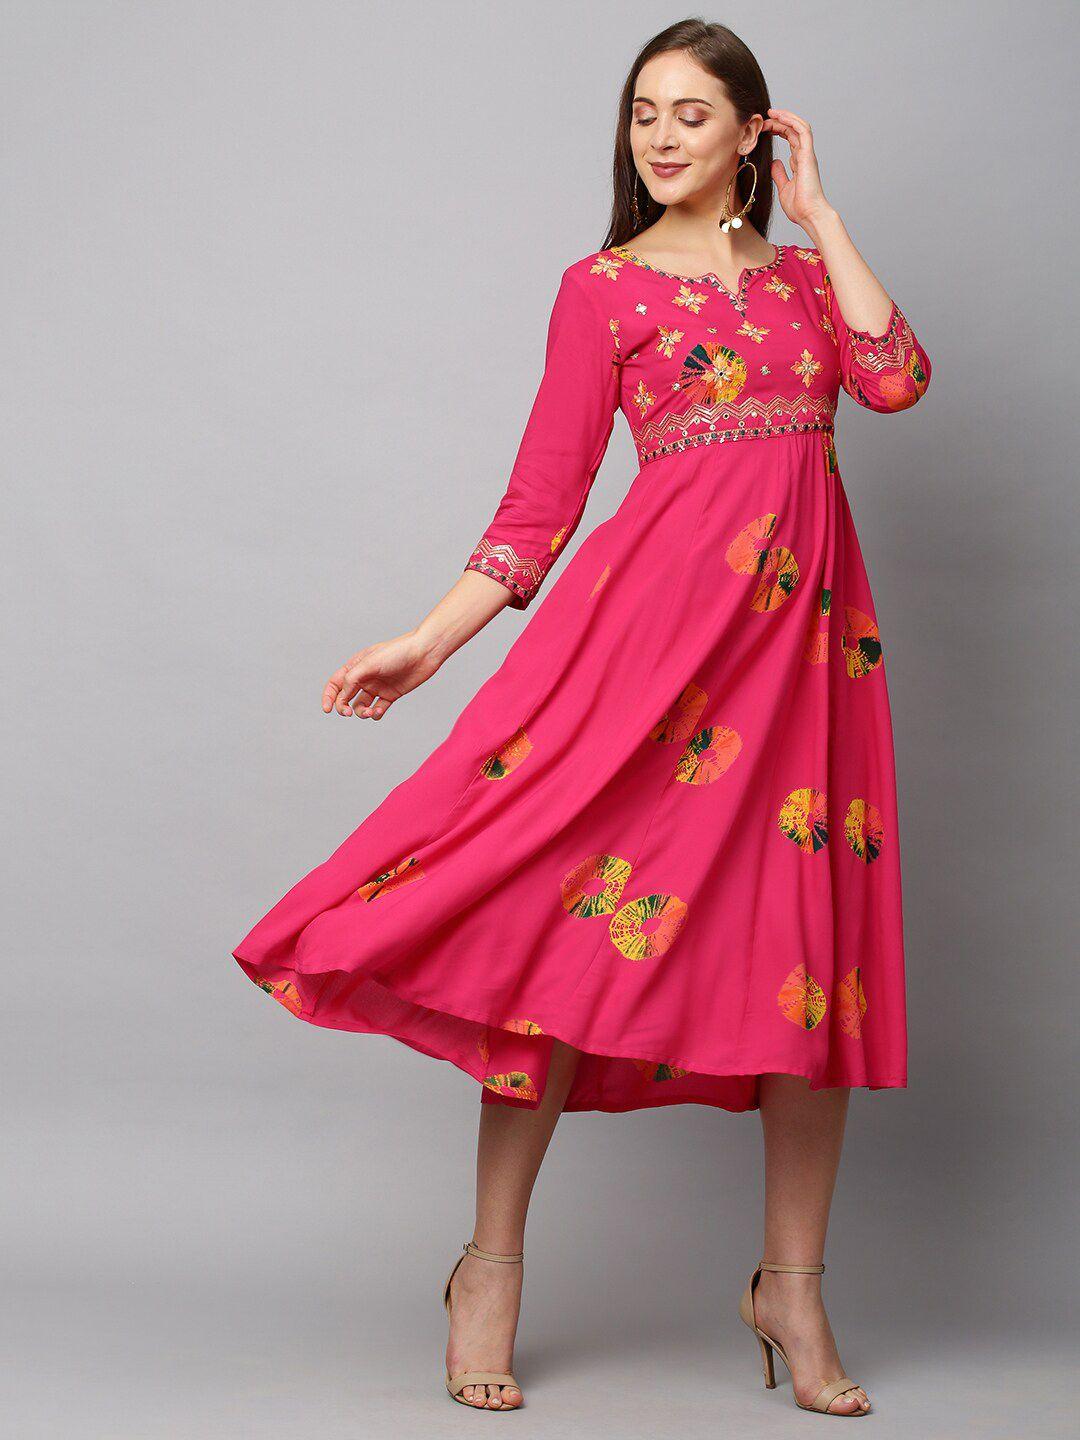 fashor pink ethnic motifs empire midi dress